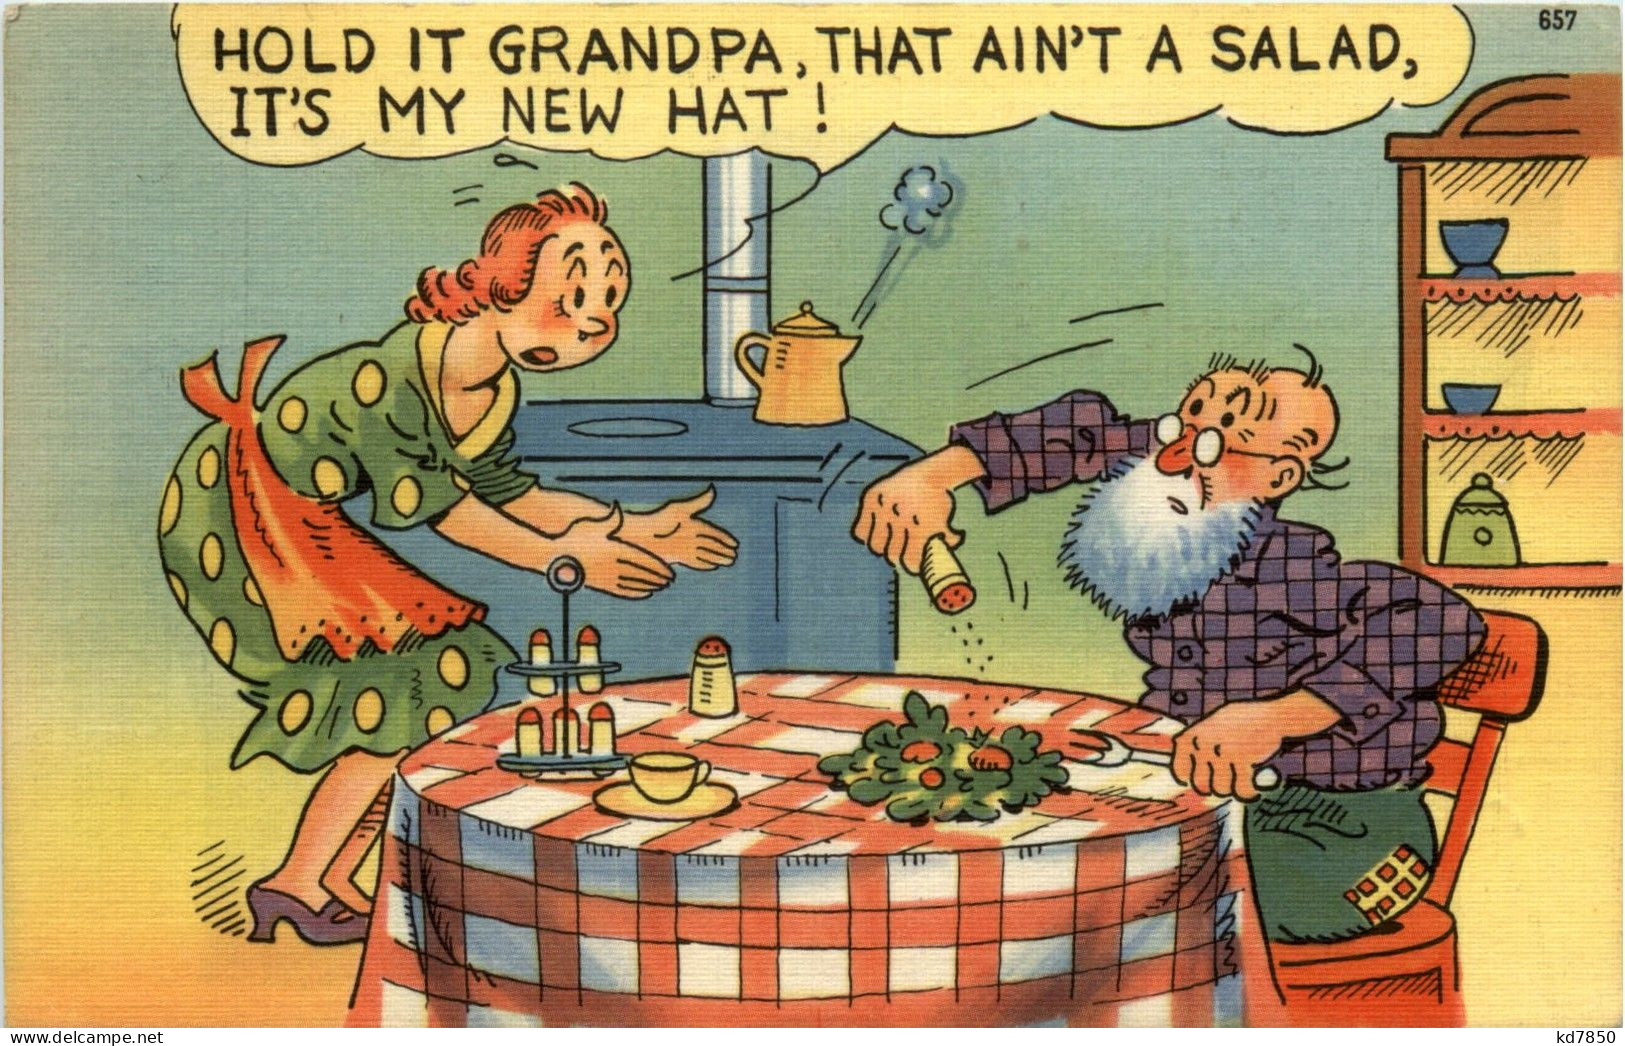 Hold It Grandpa - Humor